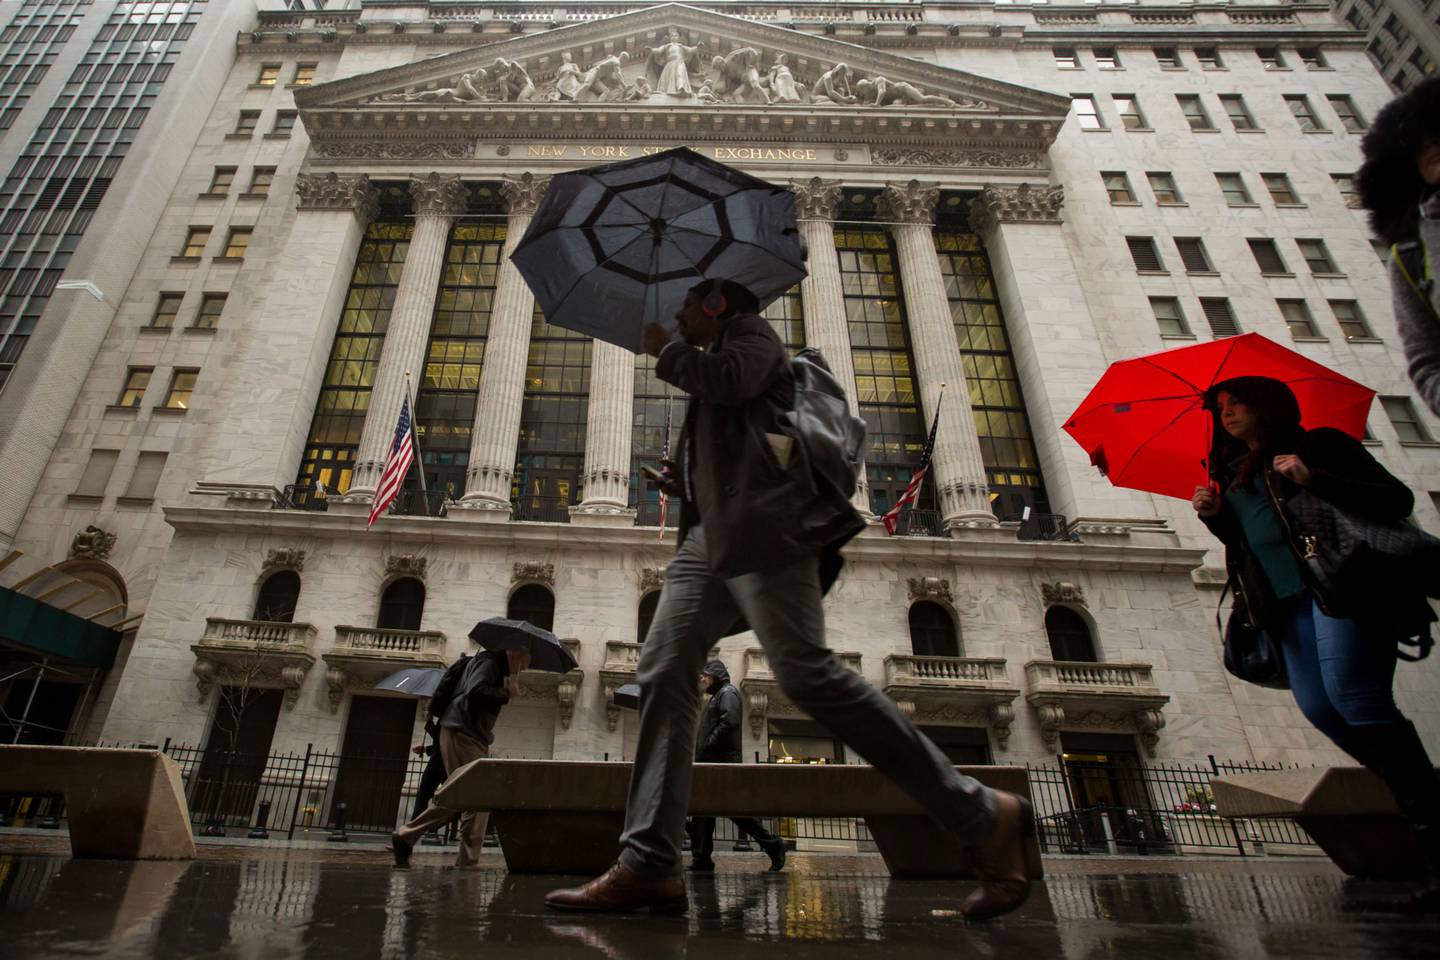 Tempo fechado para ações negociadas na Bolsa de Nova York (foto) e na Nasdaq com o aumento dos juros